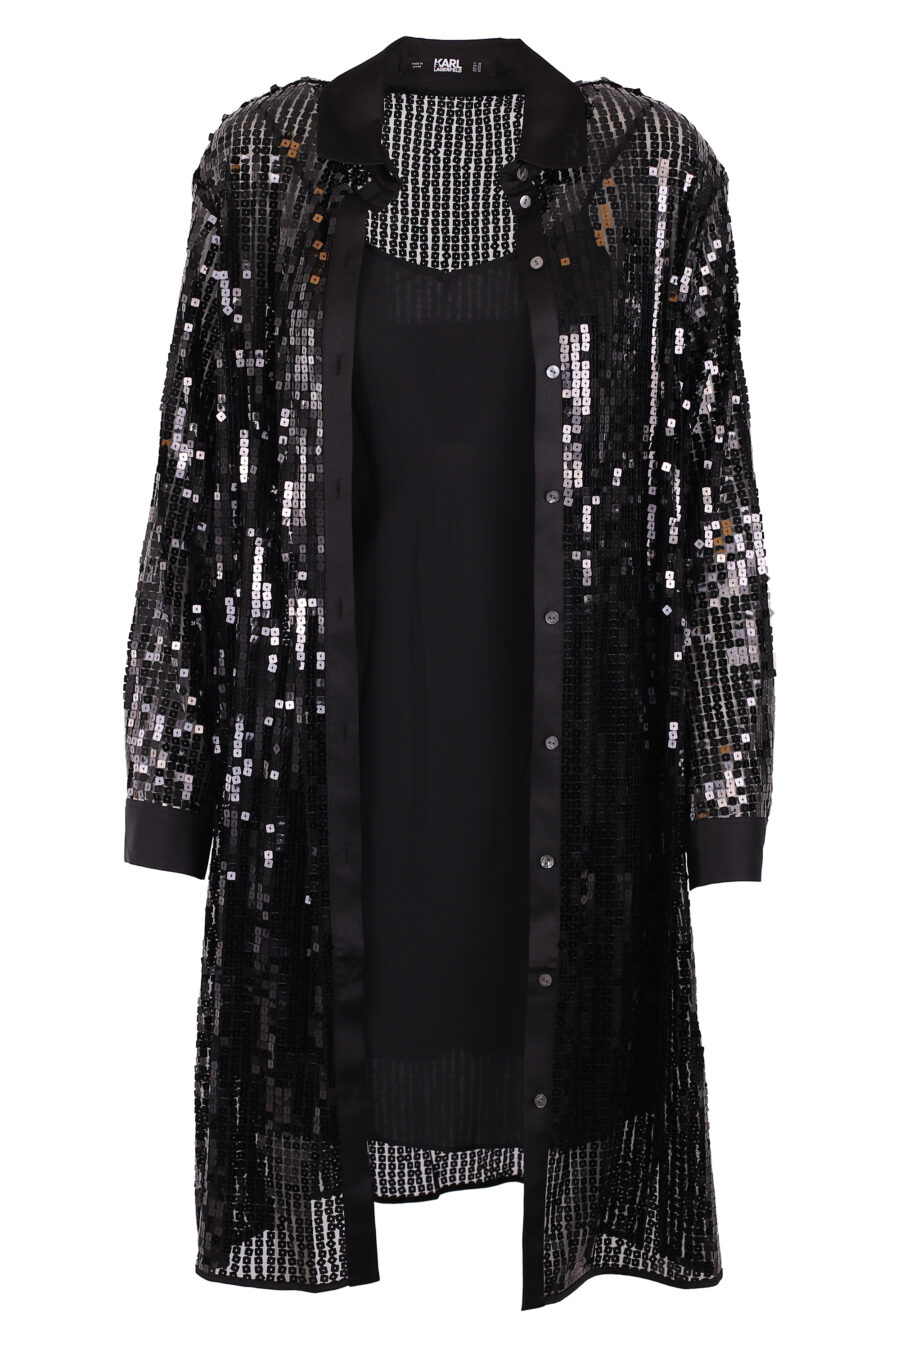 Robe tunique noire à paillettes - IMG 6263